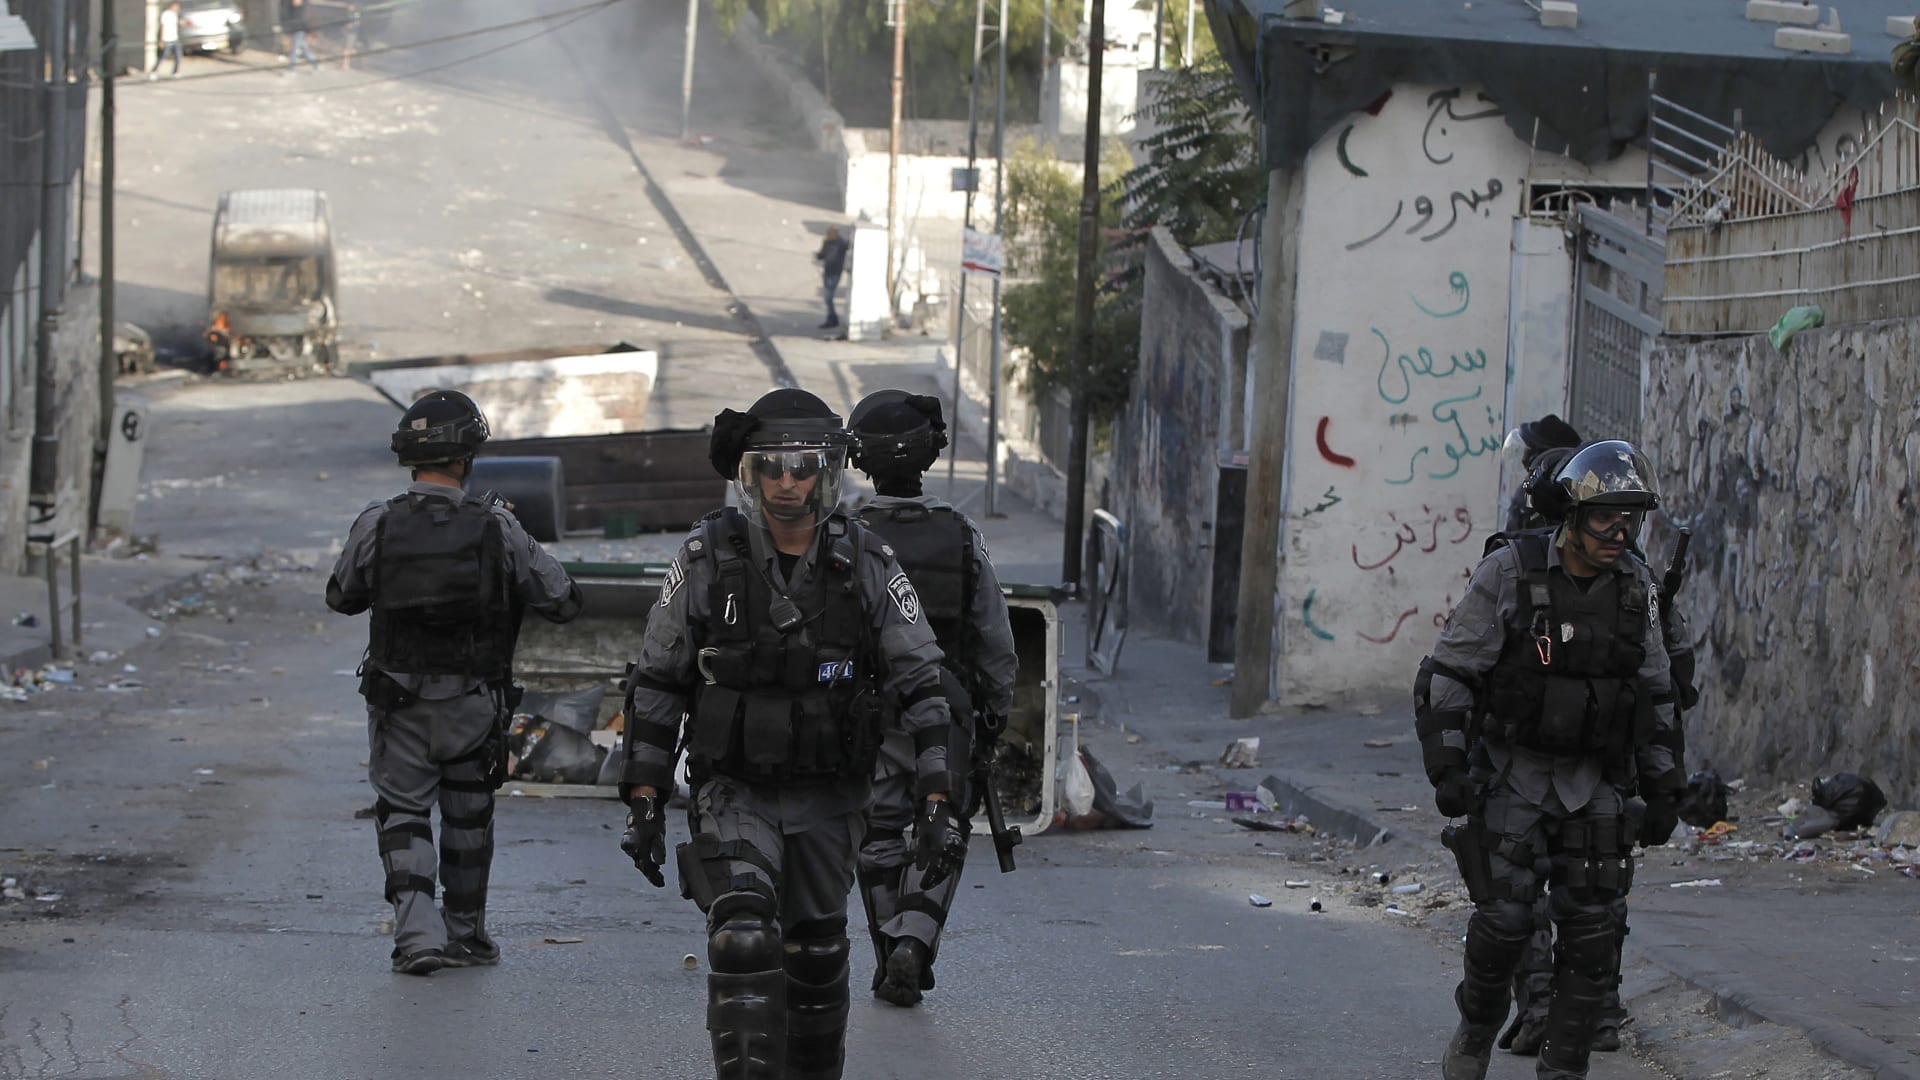 عدد من قوات الأمن الإسرائيلية ينتشرون في شارع بالقدس خلال مواجهات مع الفلسطينيين شرقي المدينة.